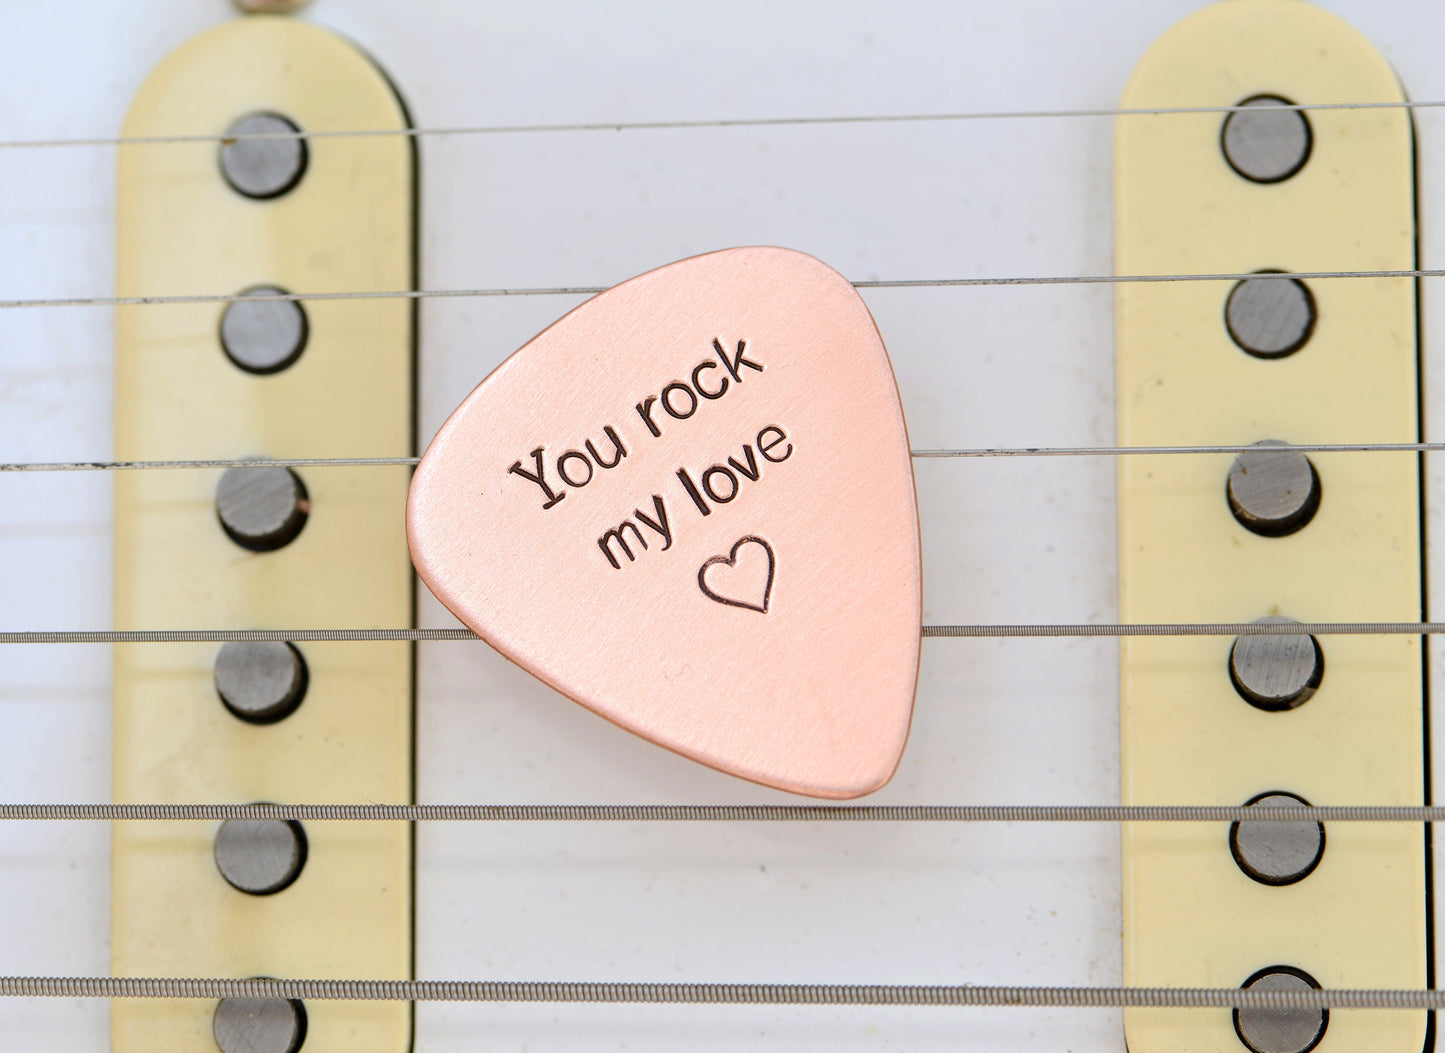 You rock my love guitar pick in copper